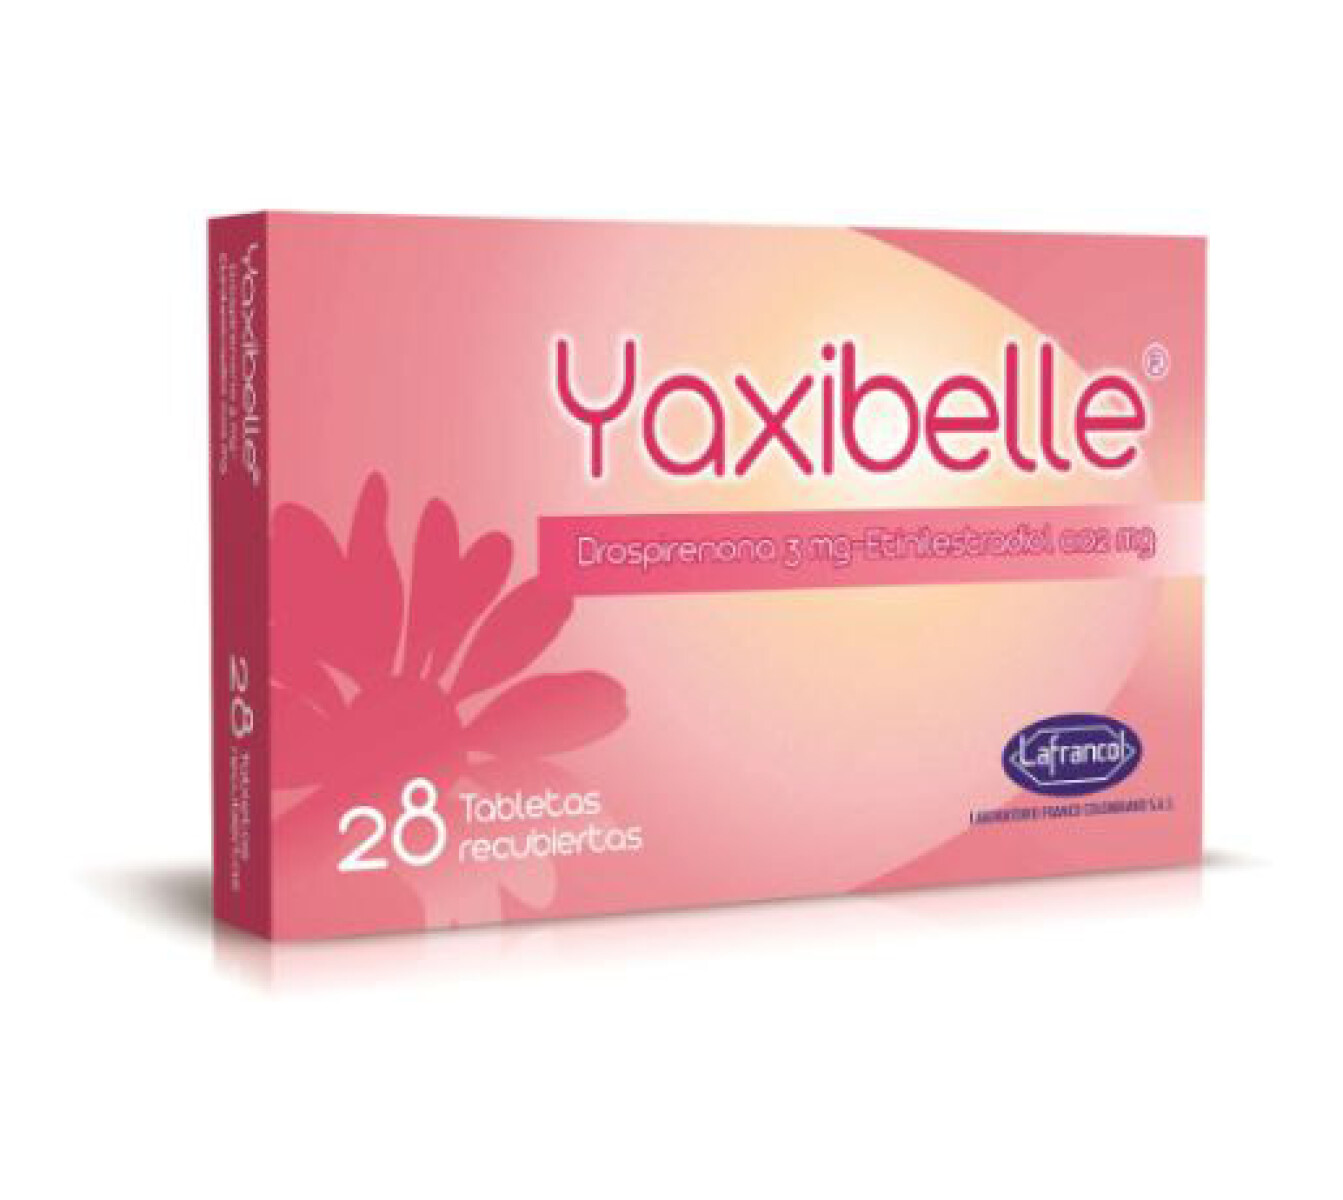 Yaxibelle x 28 COM 